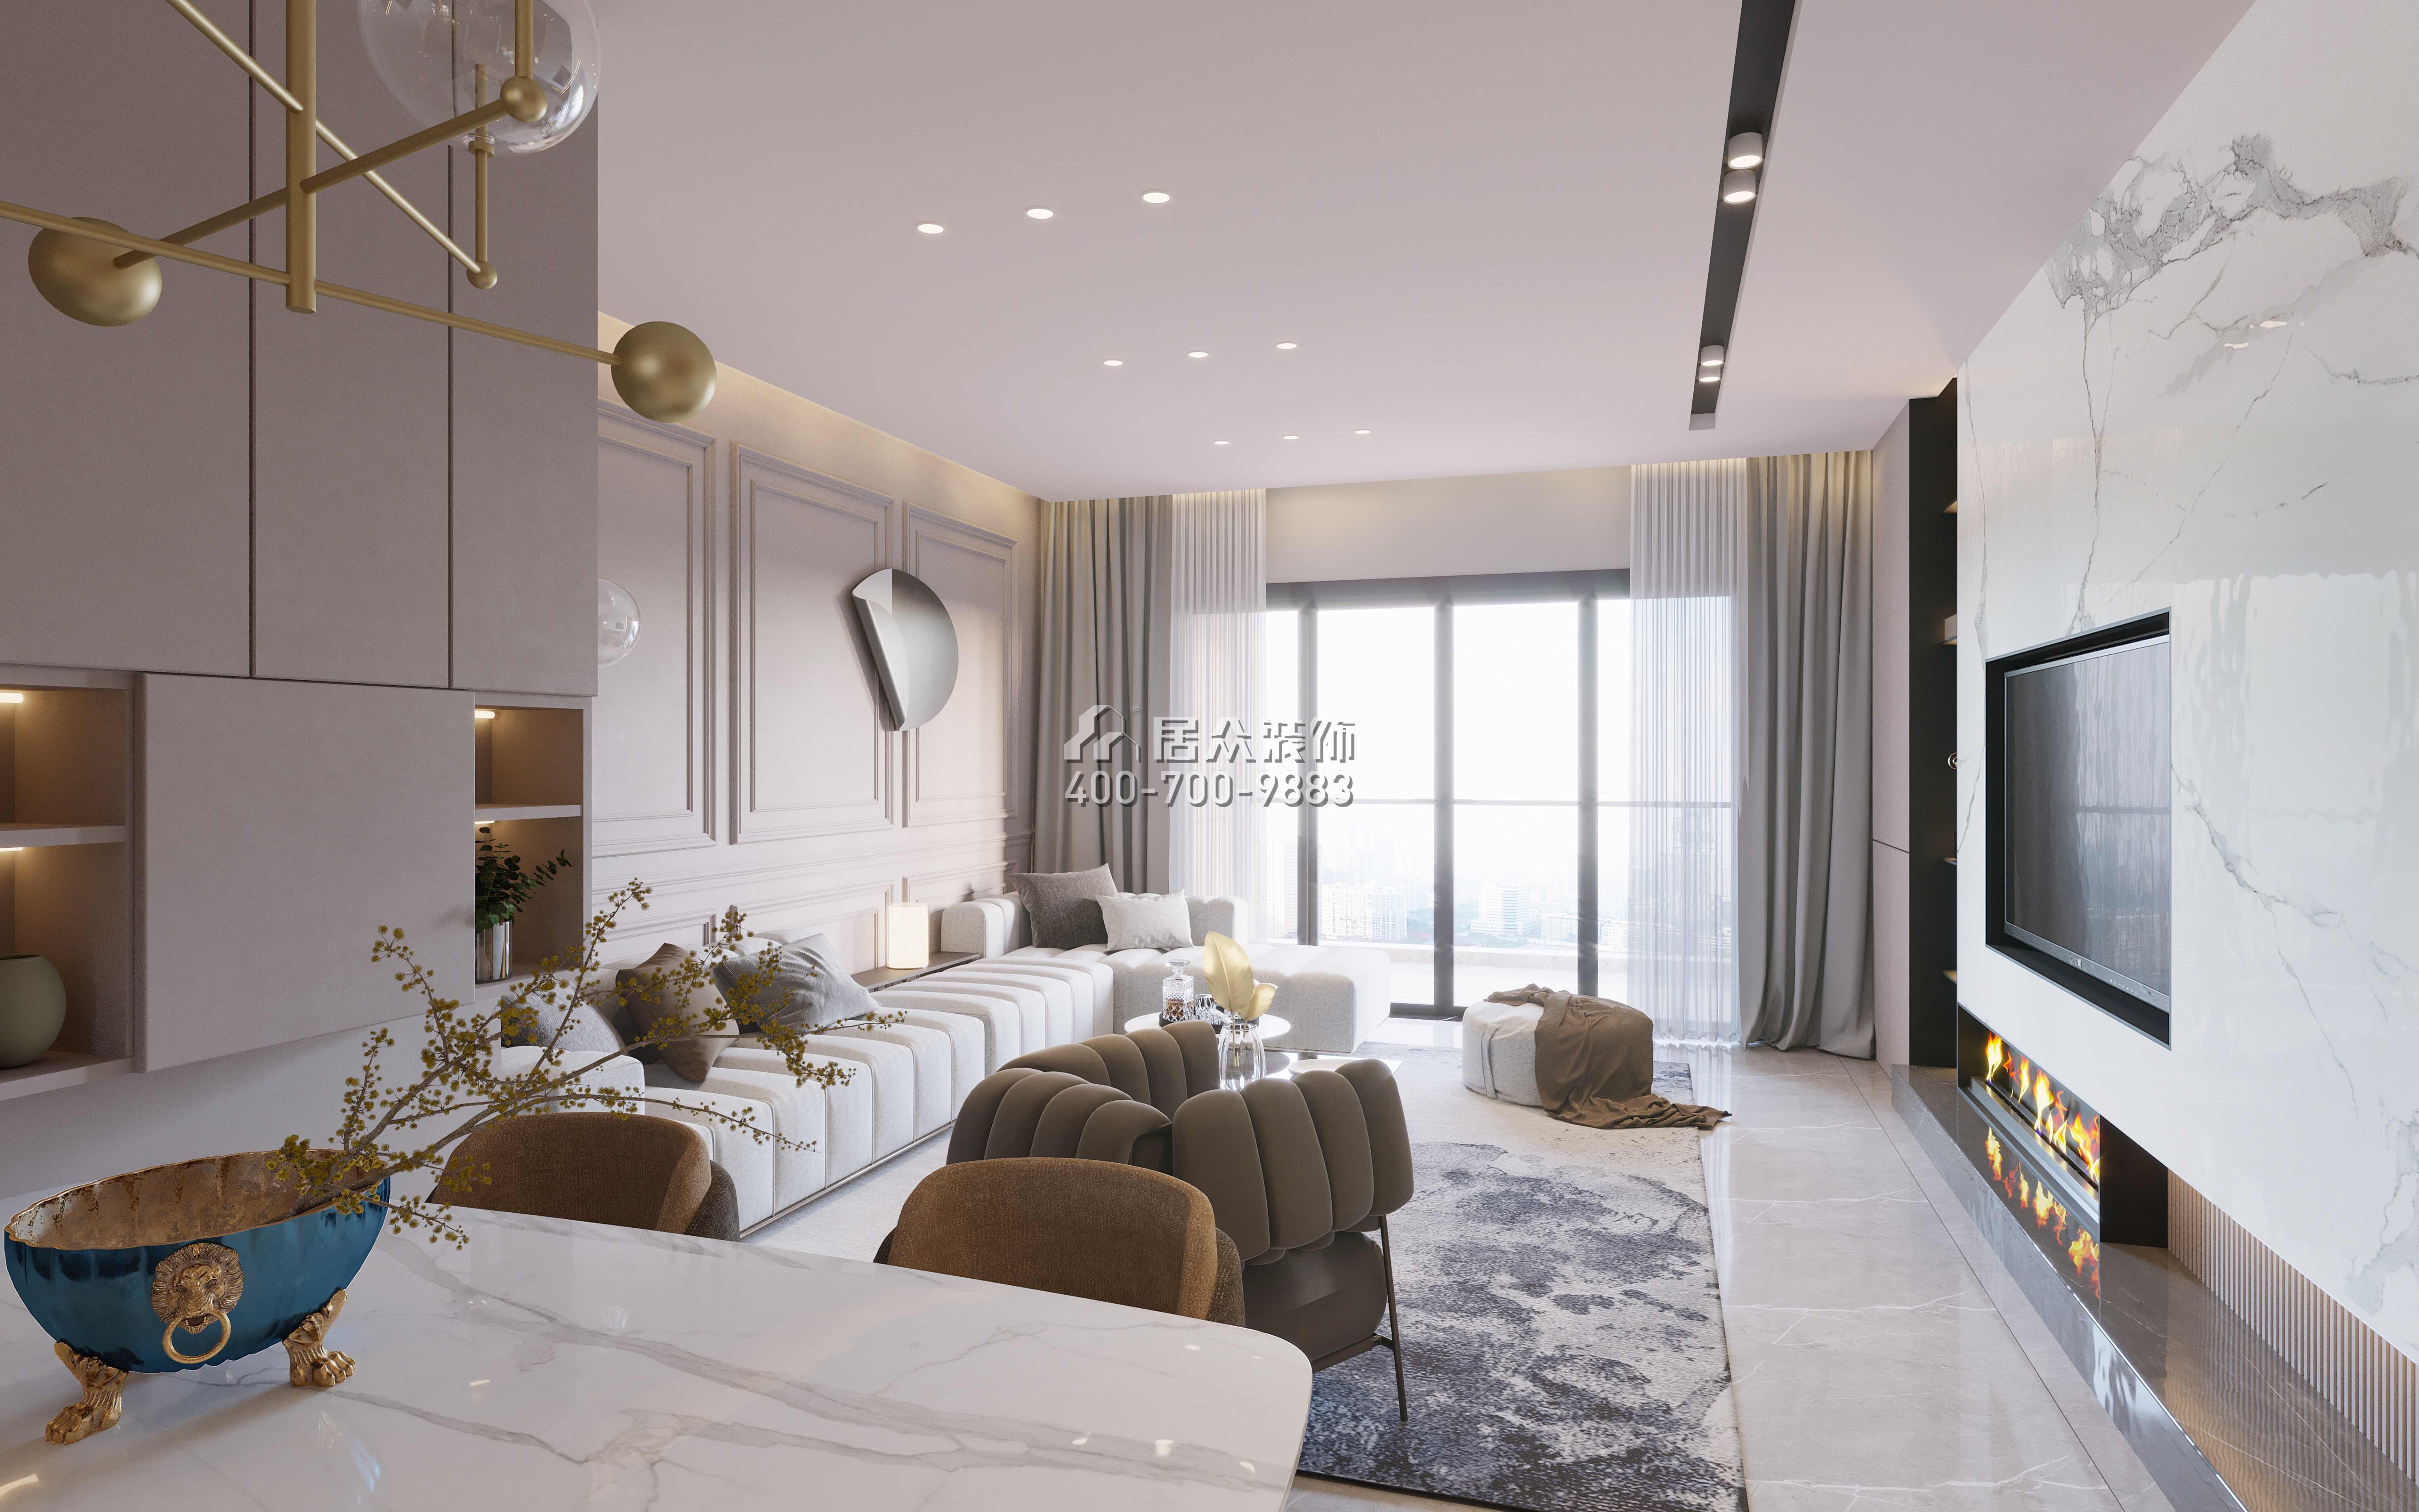 黃埔雅苑130平方米混搭風格平層戶型客廳裝修效果圖